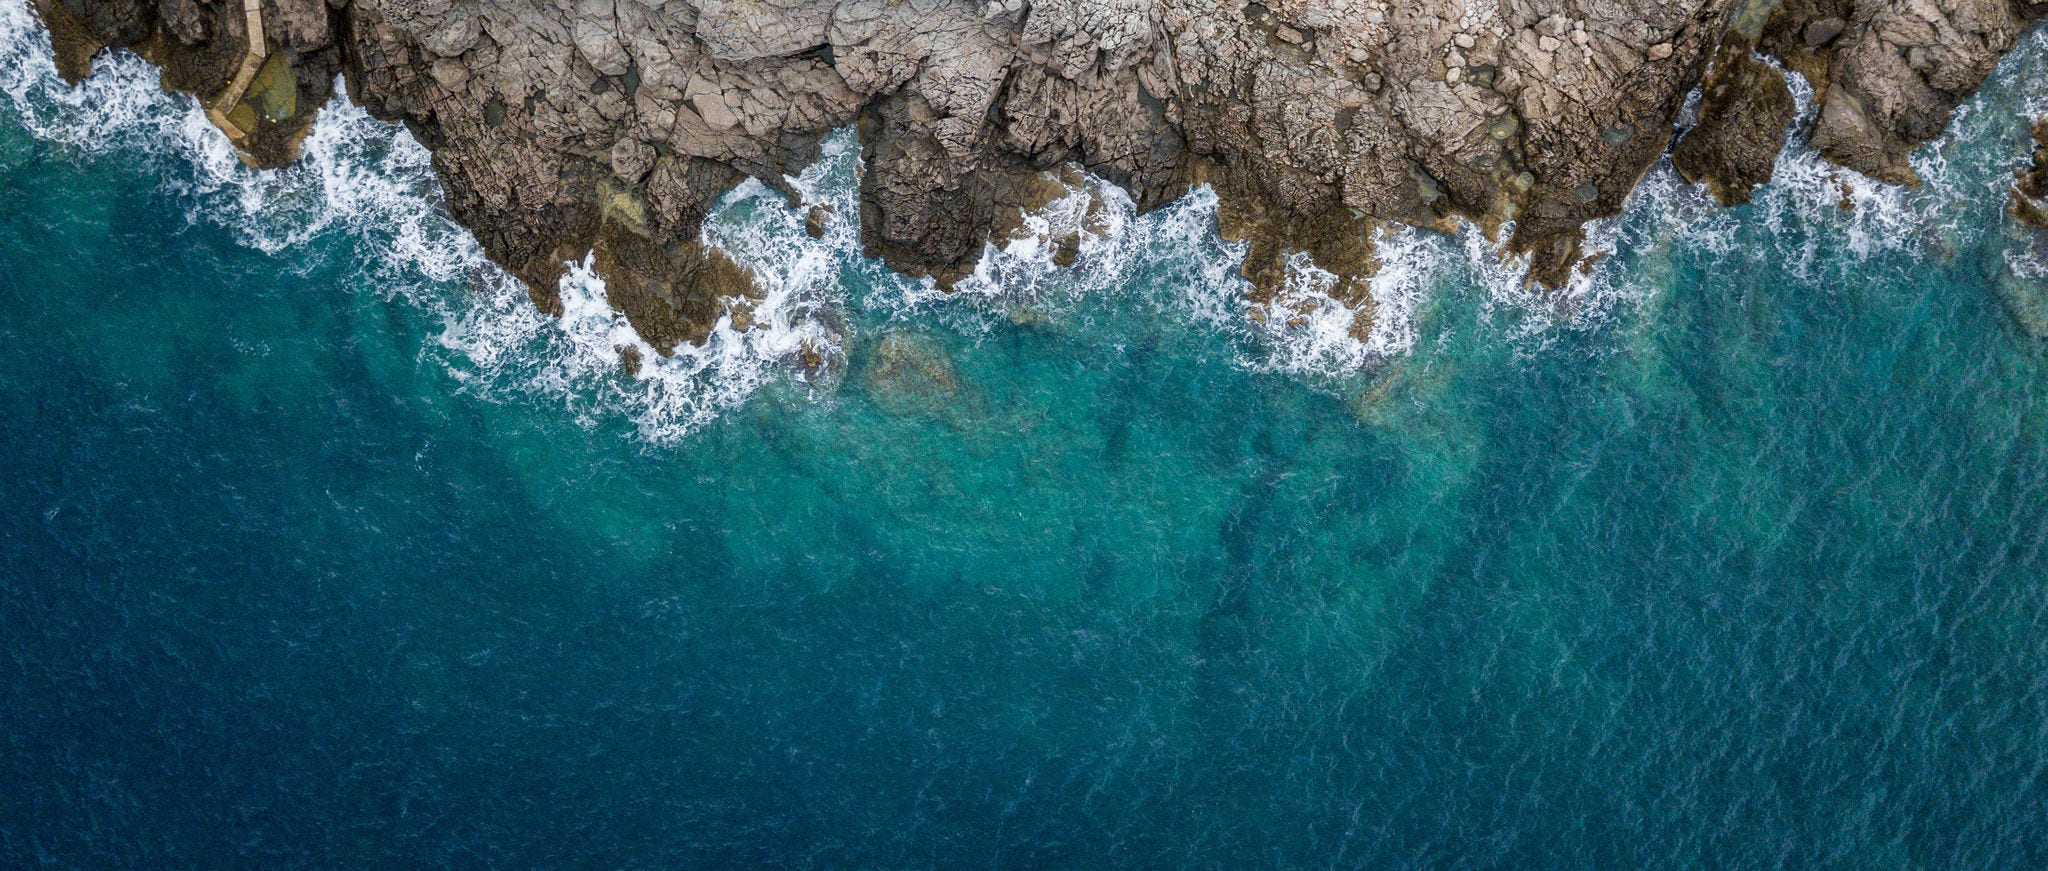 岩の多い海岸で青い波がぶつかる 